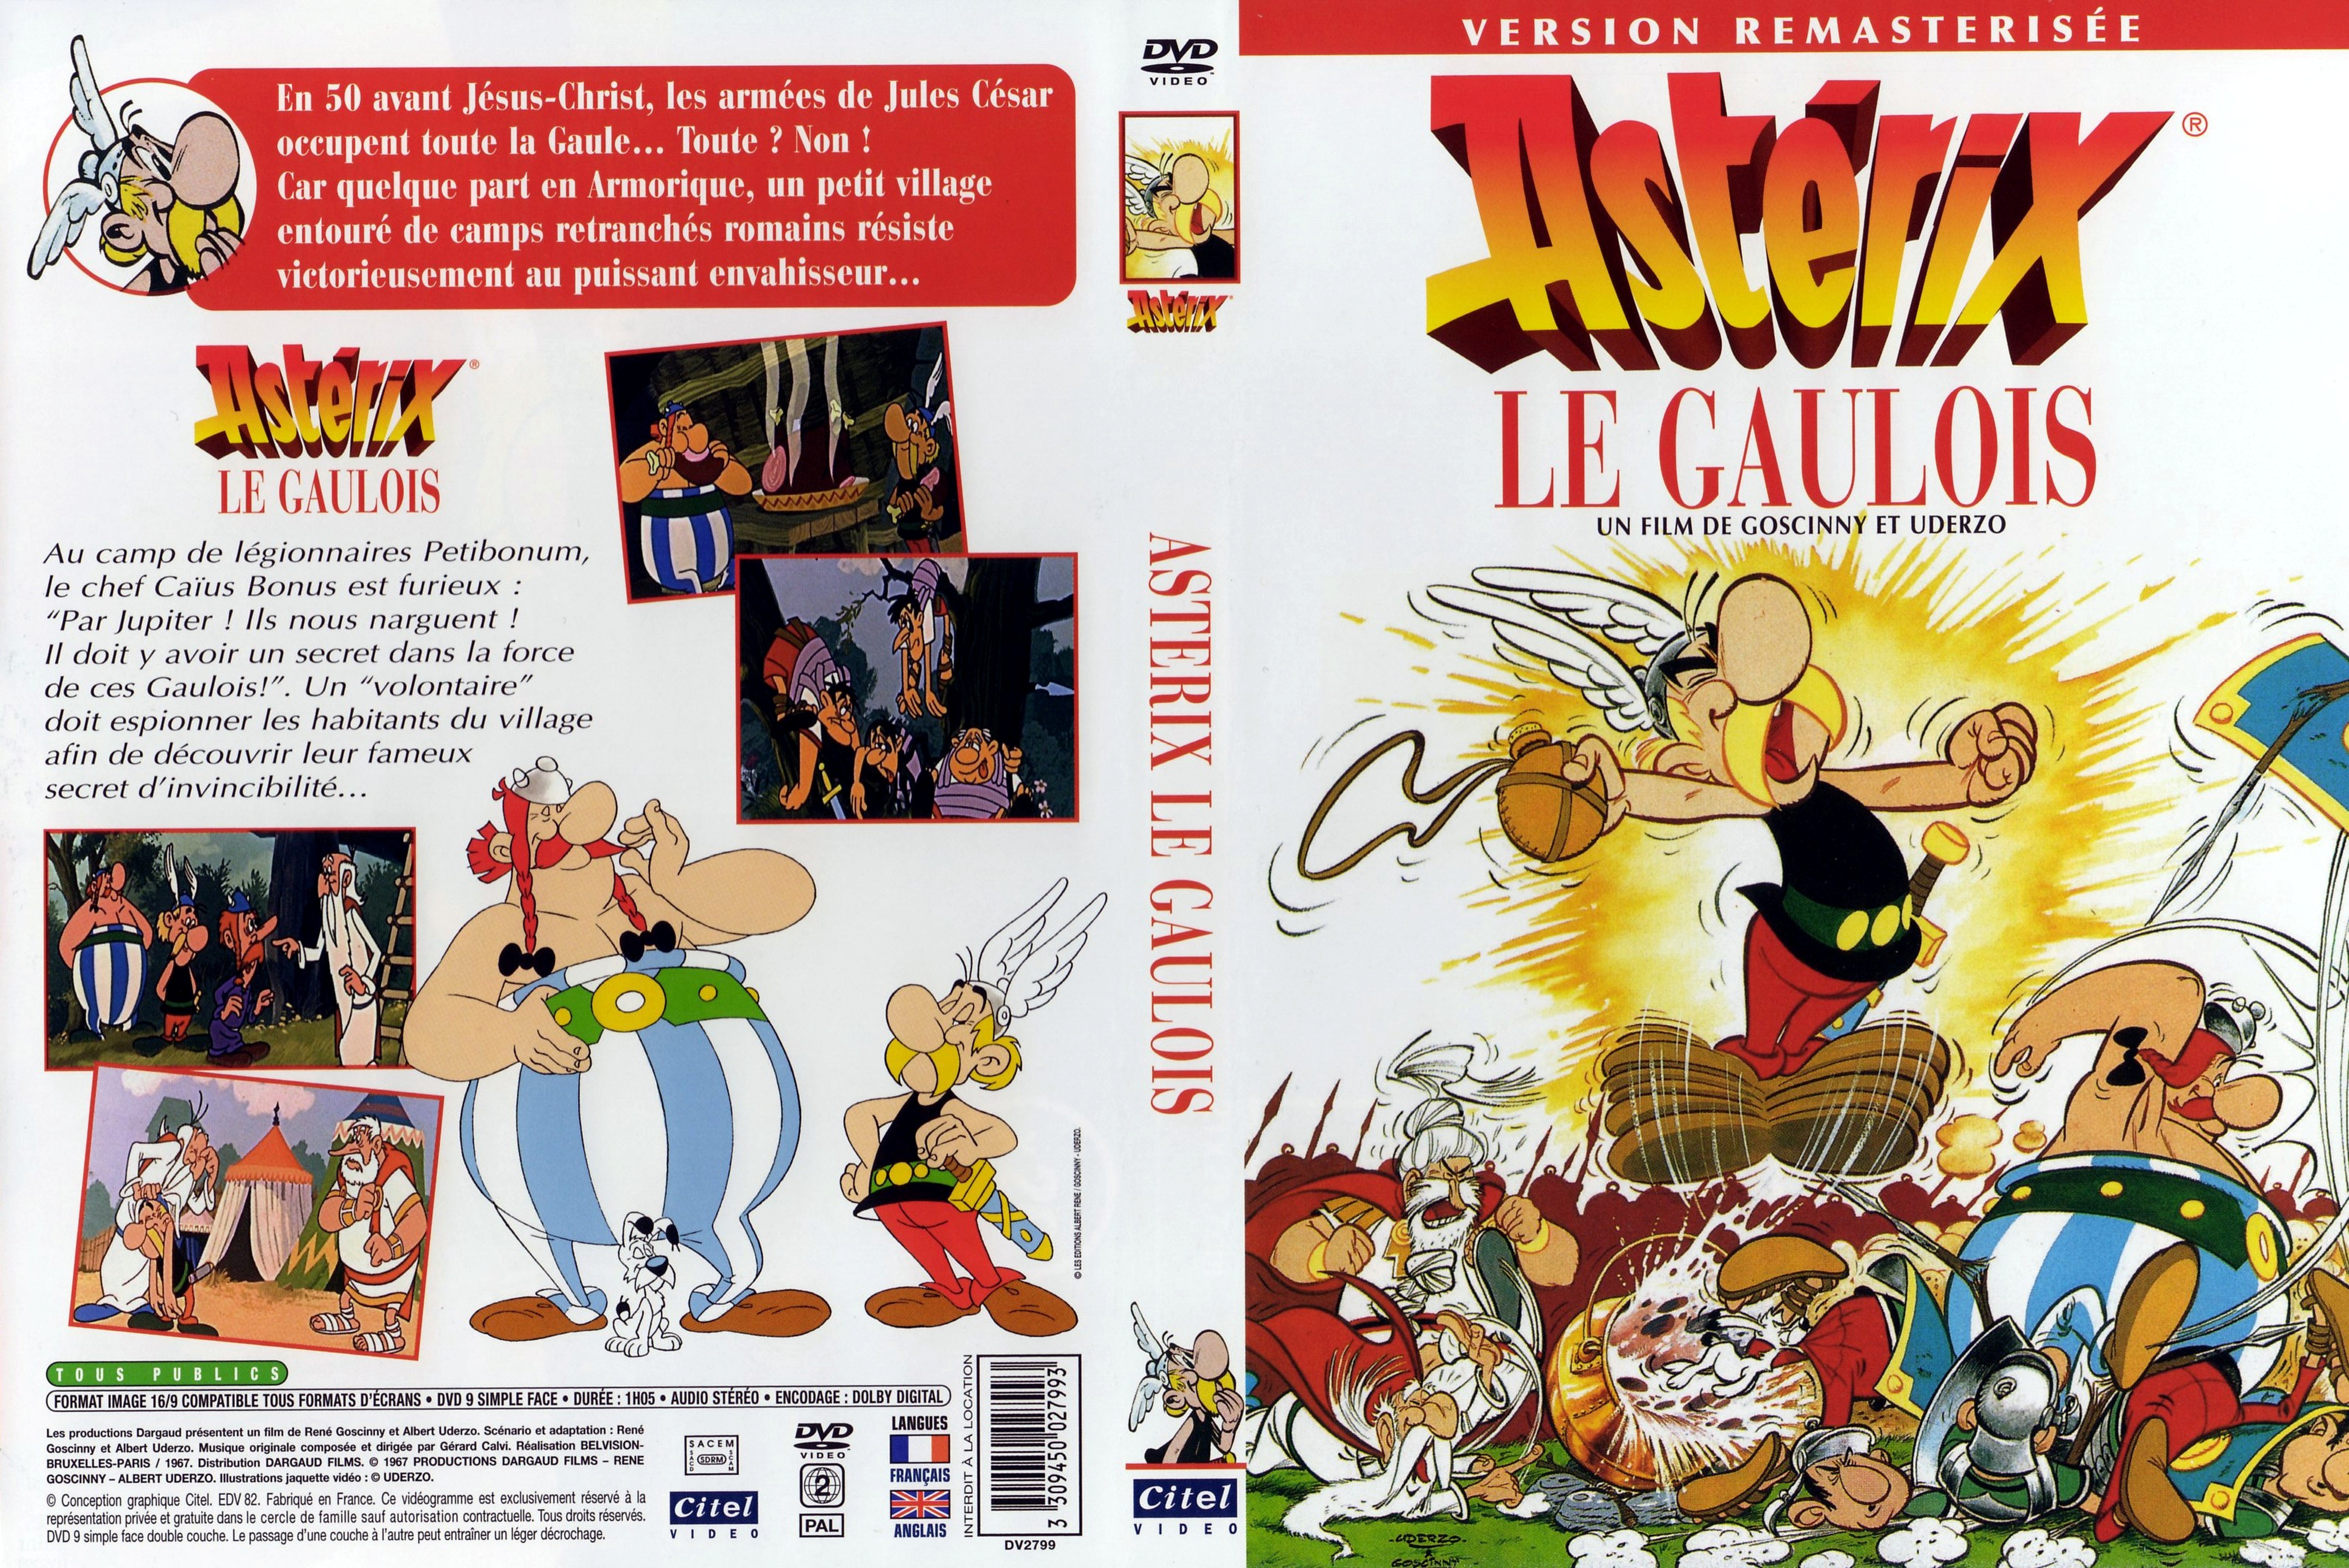 Jaquette DVD Asterix le Gaulois v3